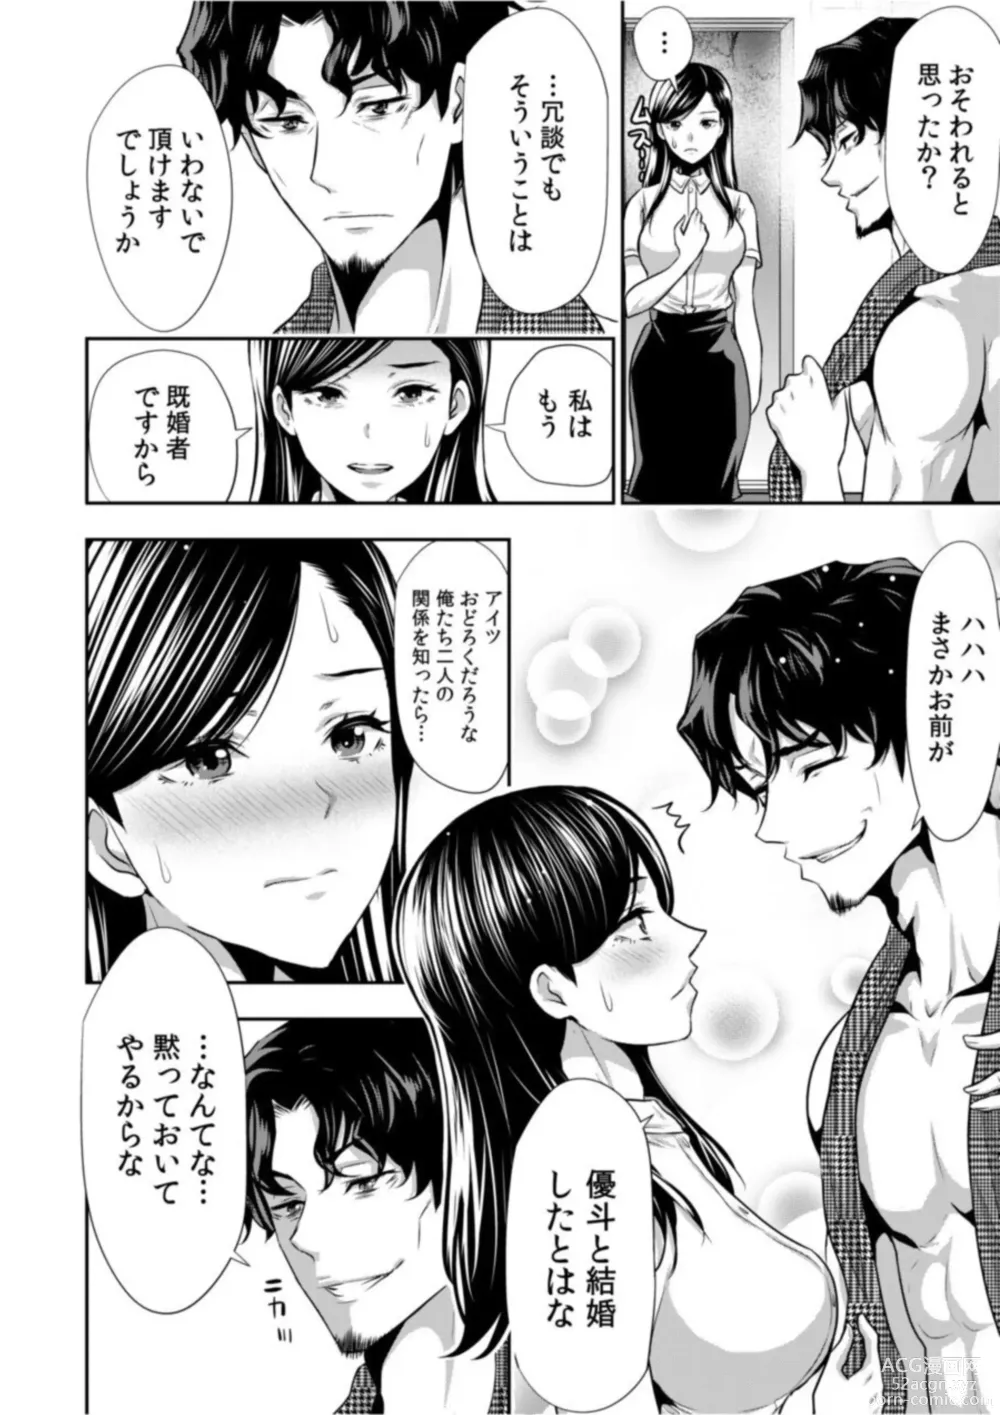 Page 8 of manga Daikirai na Motokare Joushi to Masakano Shucchou Aibeya... Massage no Hazu ga Asa made Nandomo Nandomo... 1